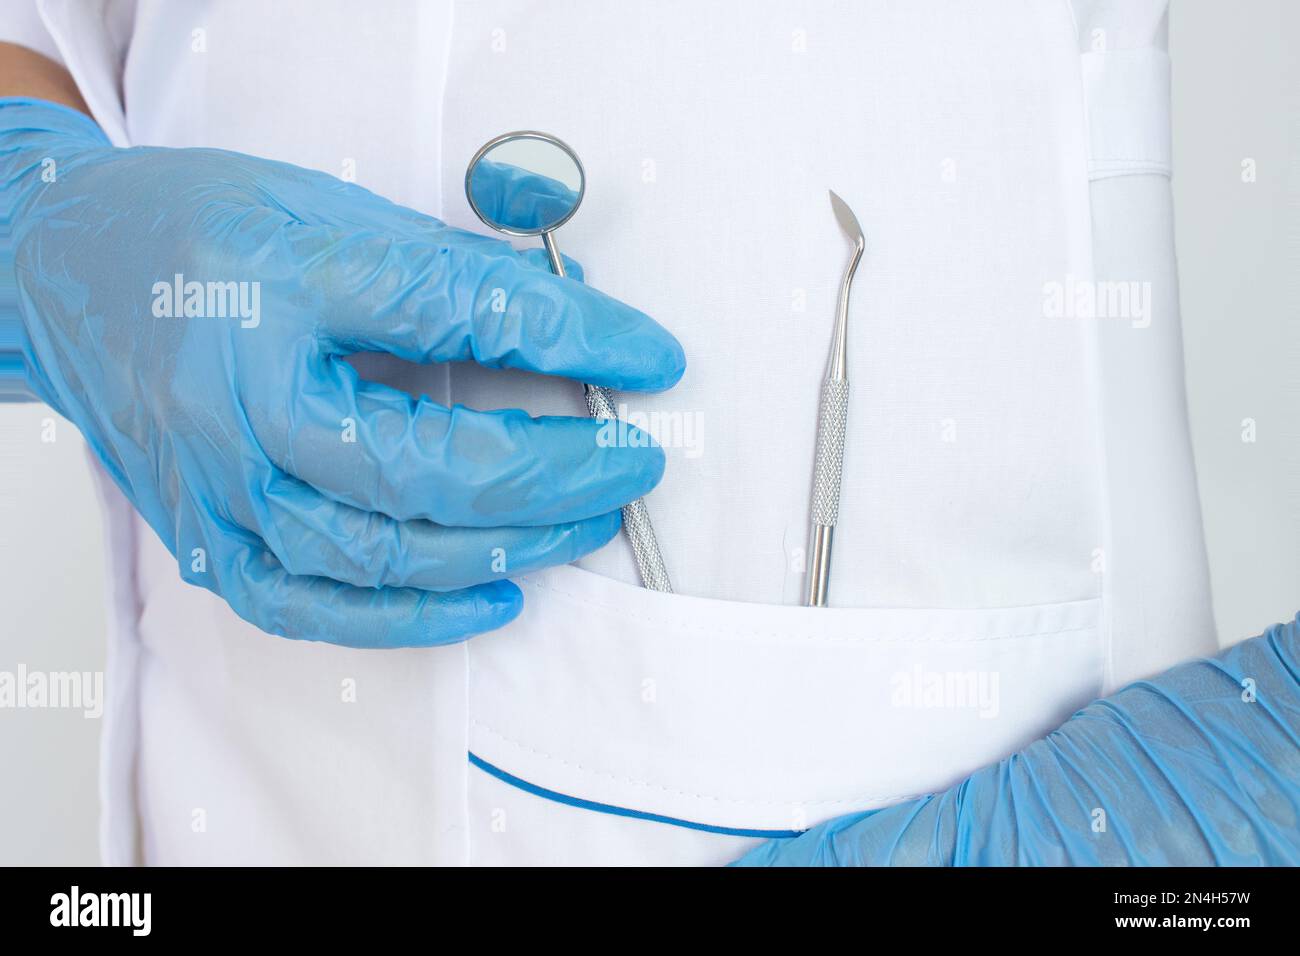 Détail des outils dentaires à main en clinique dentaire. Concept d'hygiène buccale dans la famille. Teethcare, concept de santé dentaire Banque D'Images